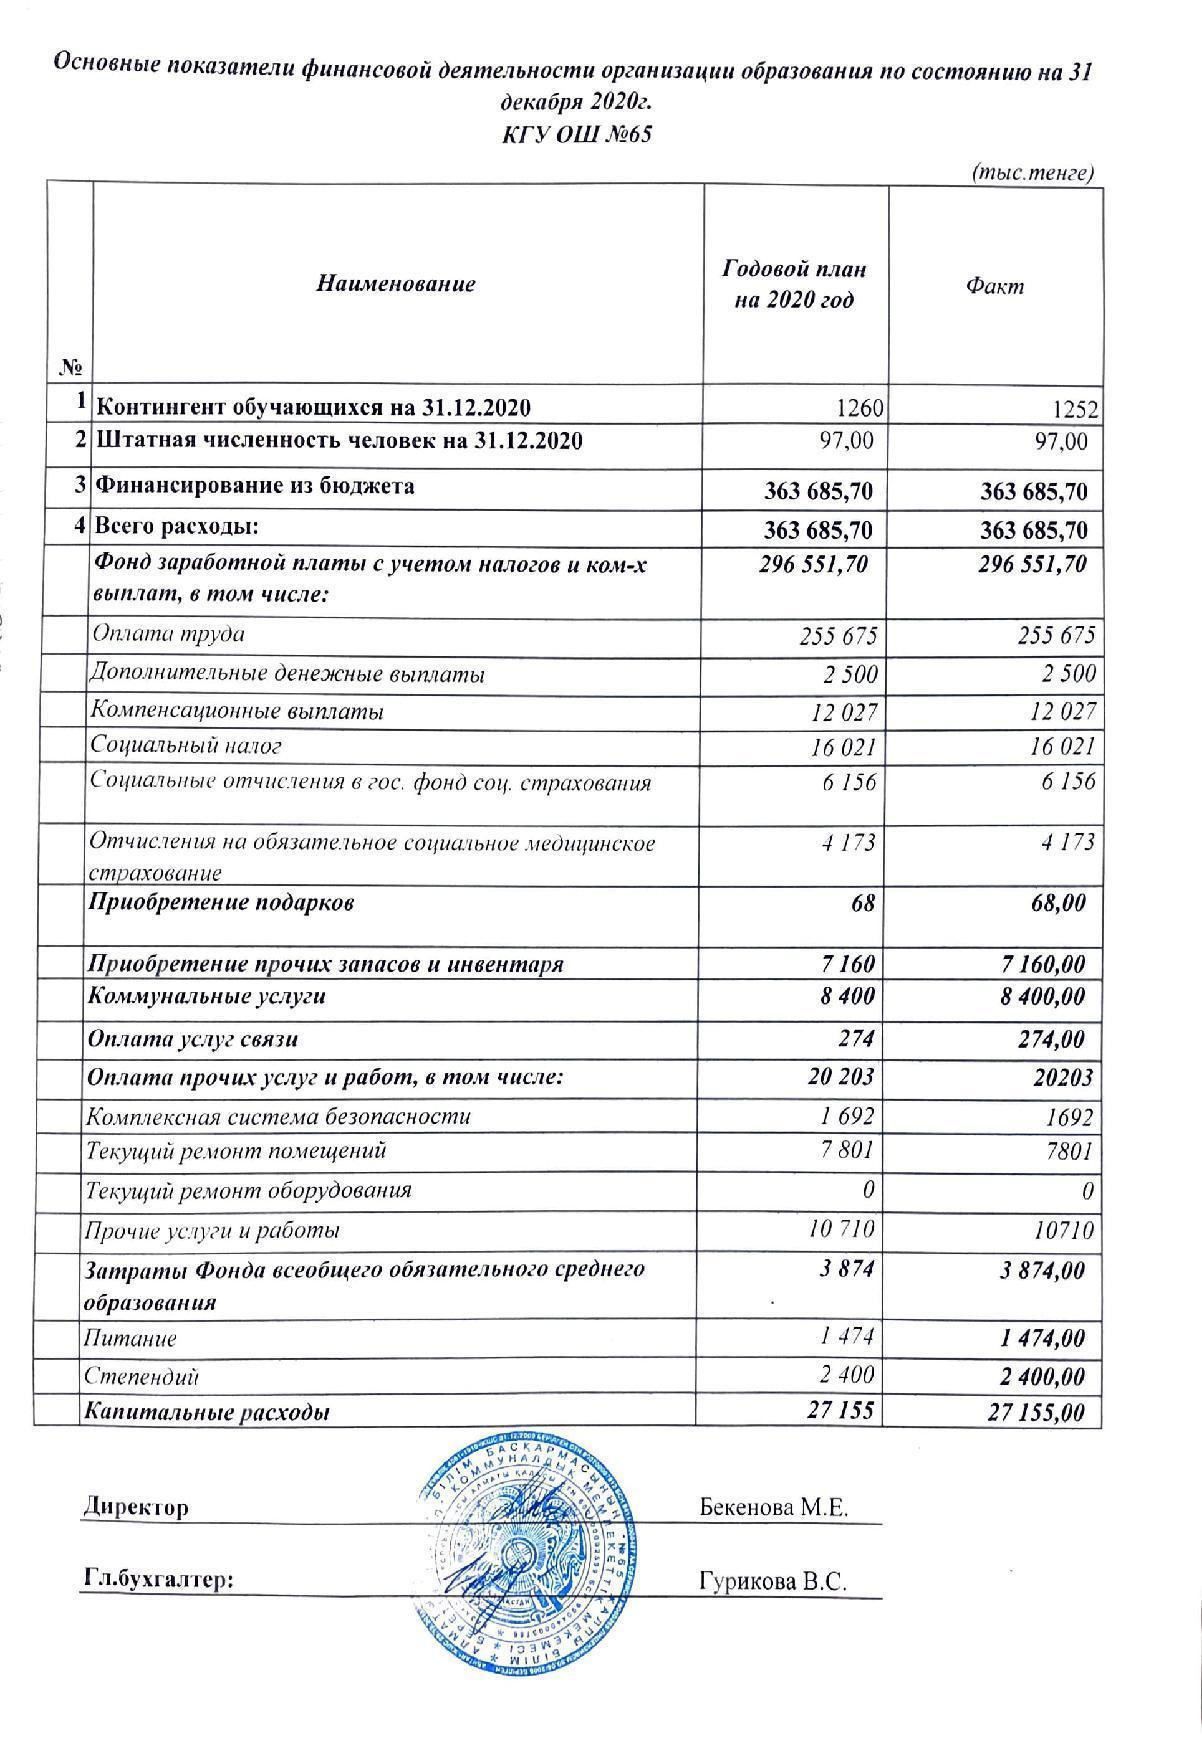 Основные показатели финансовой деятельности на 31 декабря 2020 г.